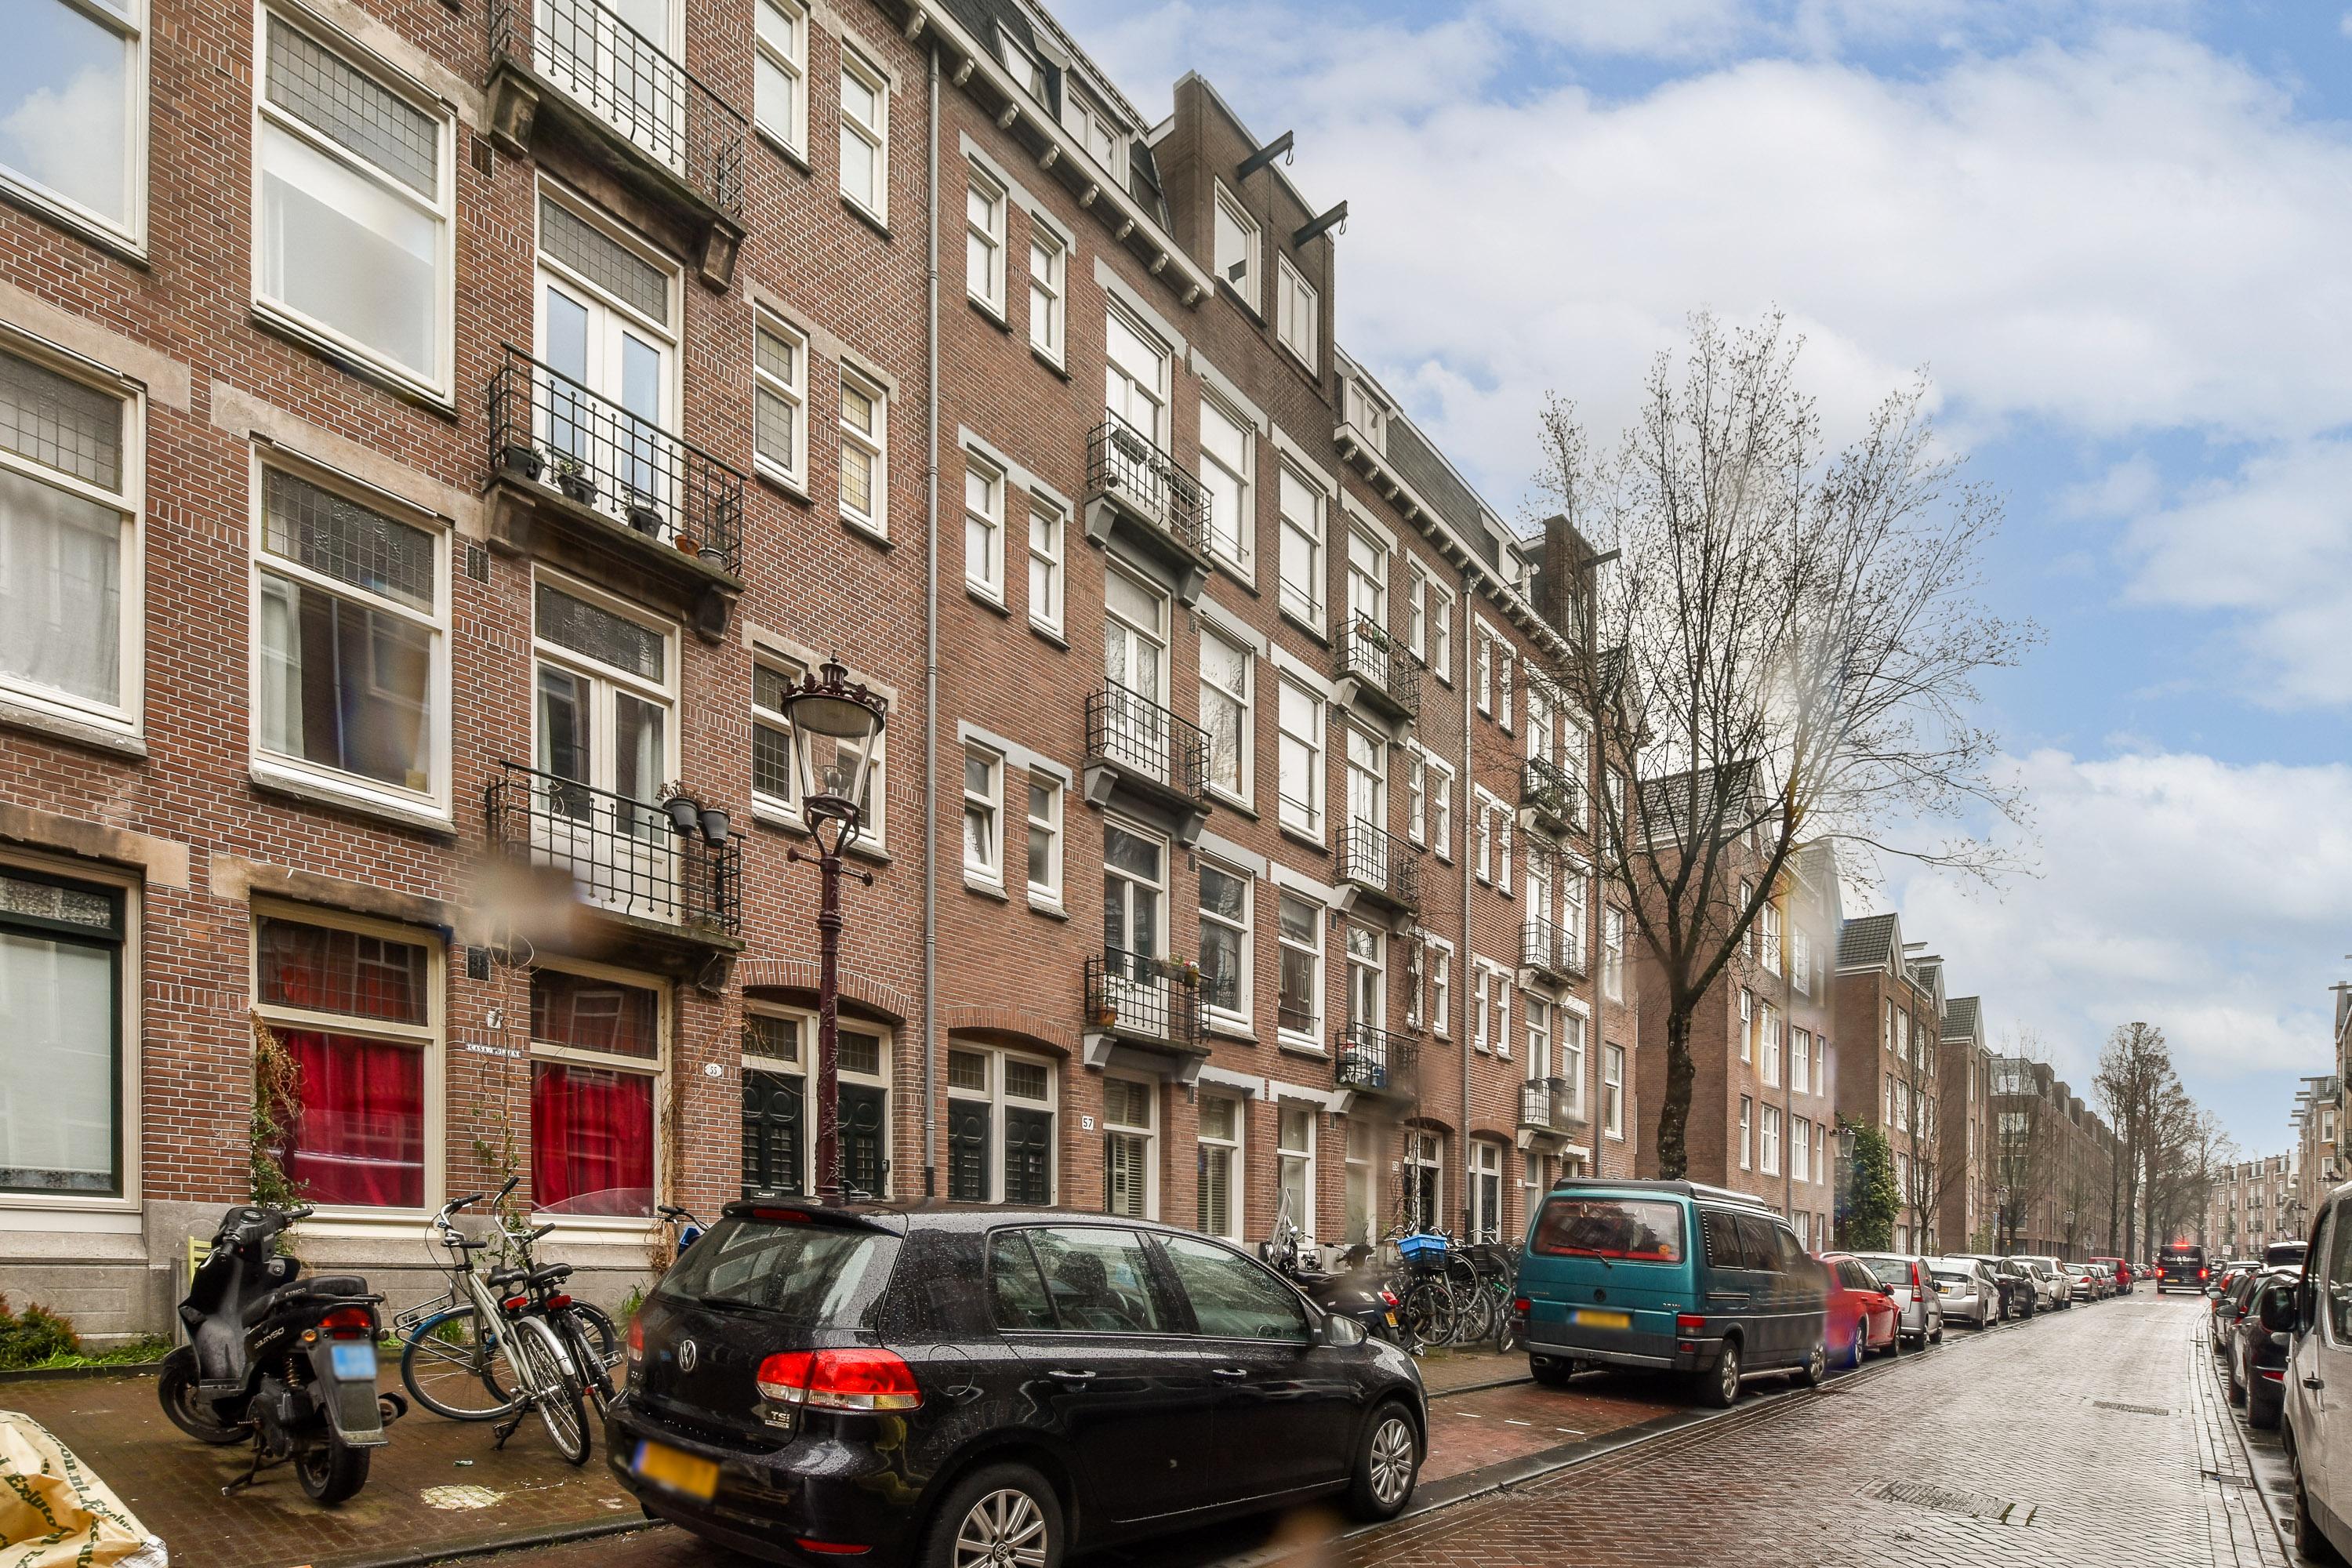 Bekijk foto 1/42 van apartment in Amsterdam